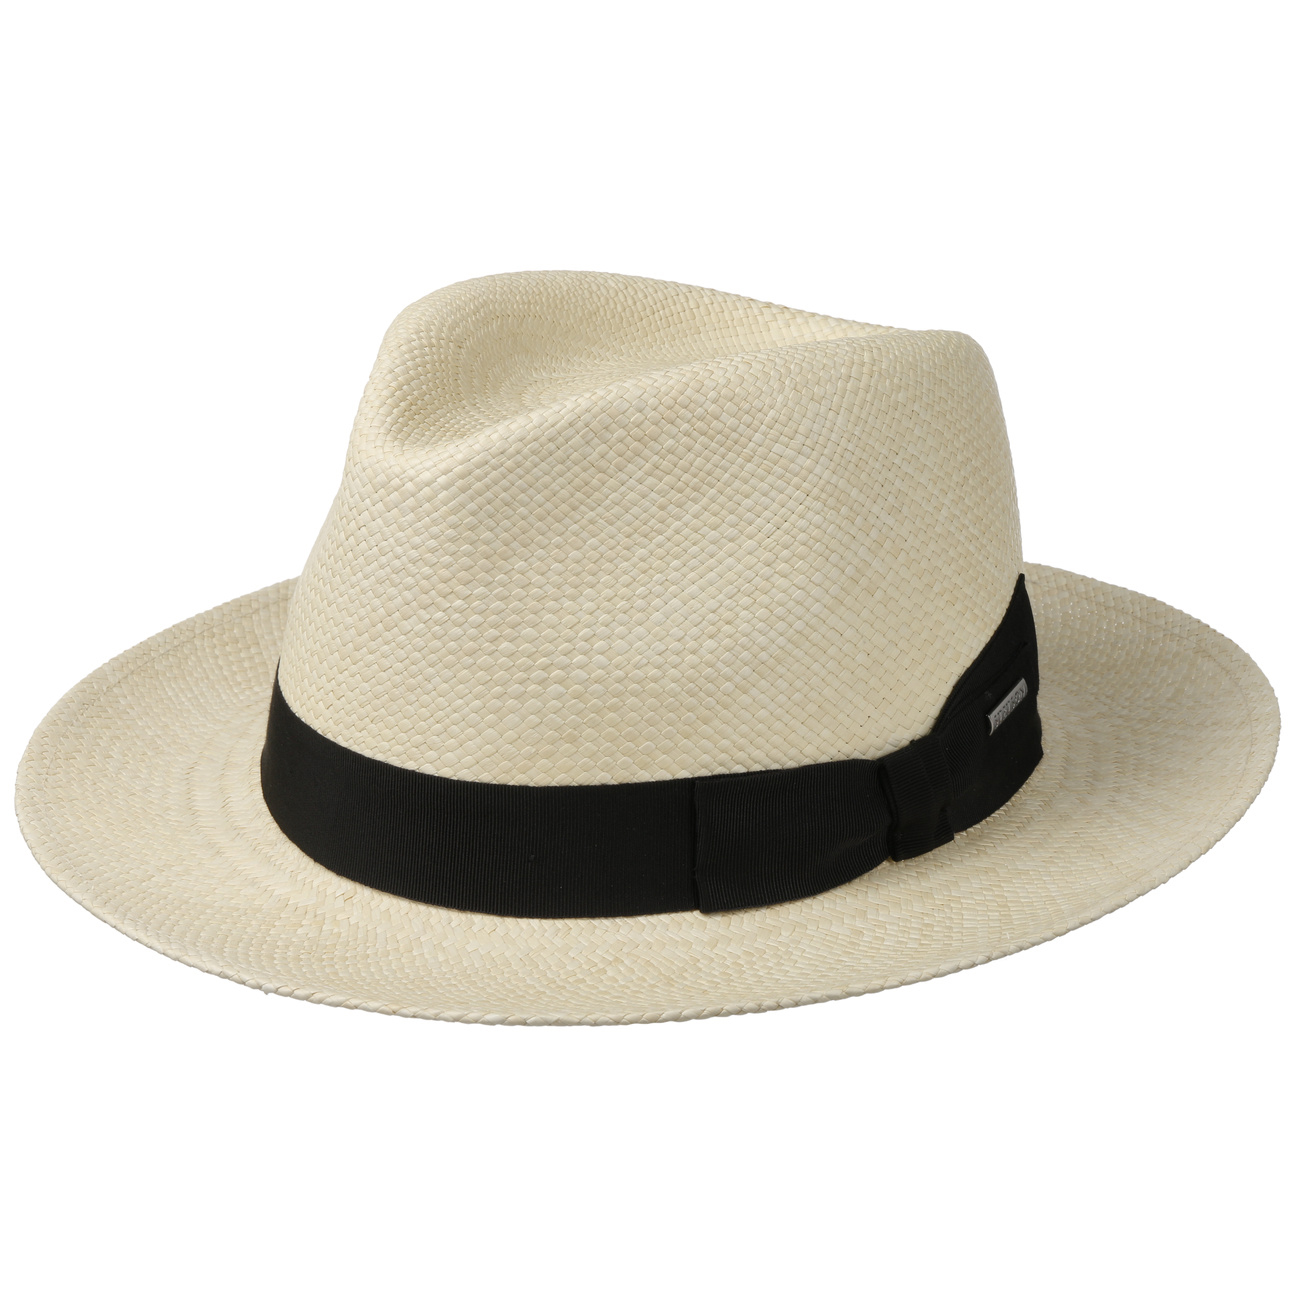 Stetson---Valeco-Fedora-Panama-Hat---nature